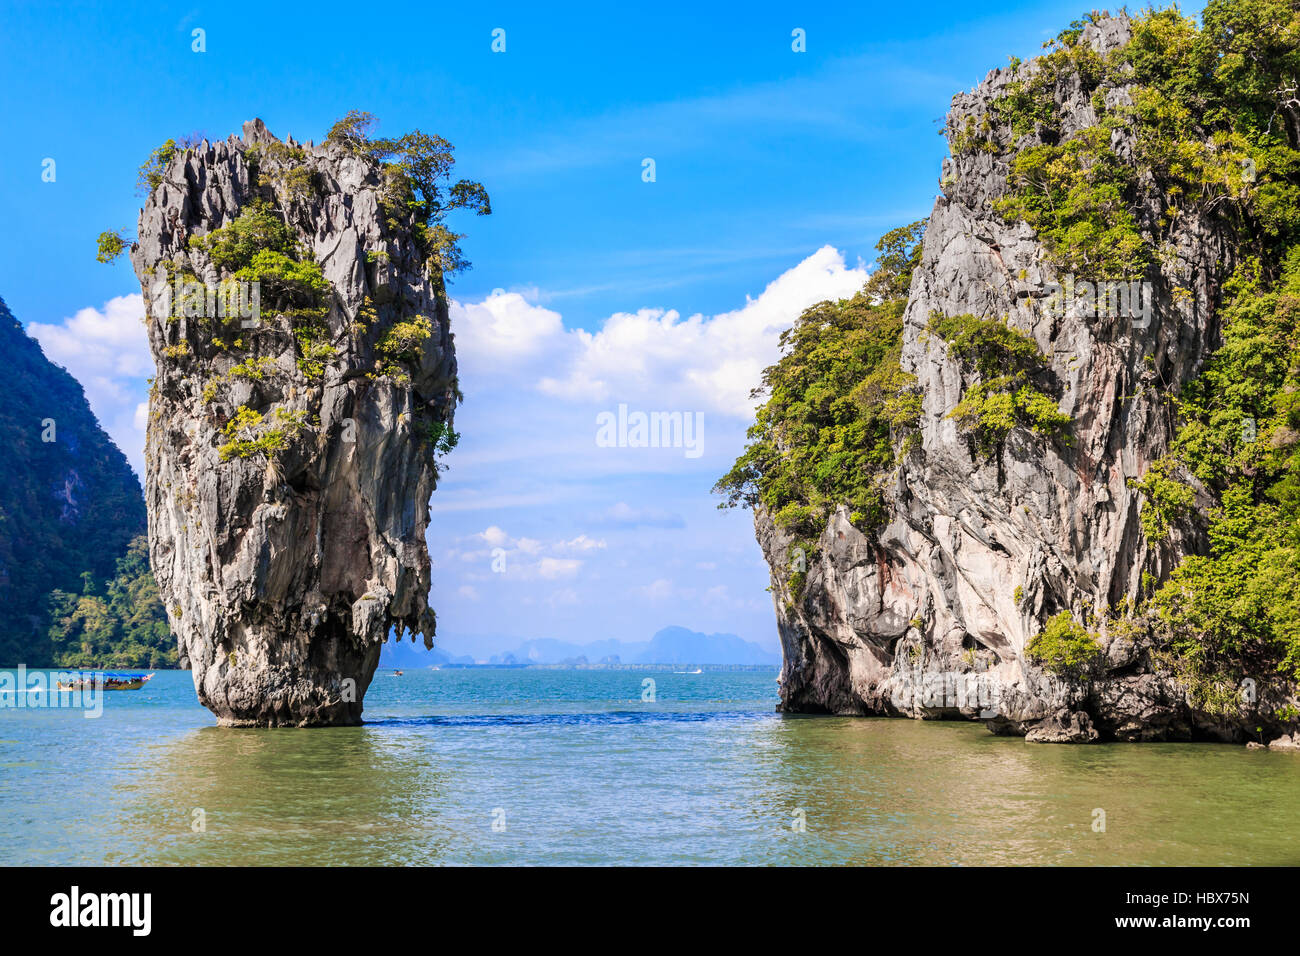 Thailand. James Bond Island in Phang Nga Bay. Stock Photo